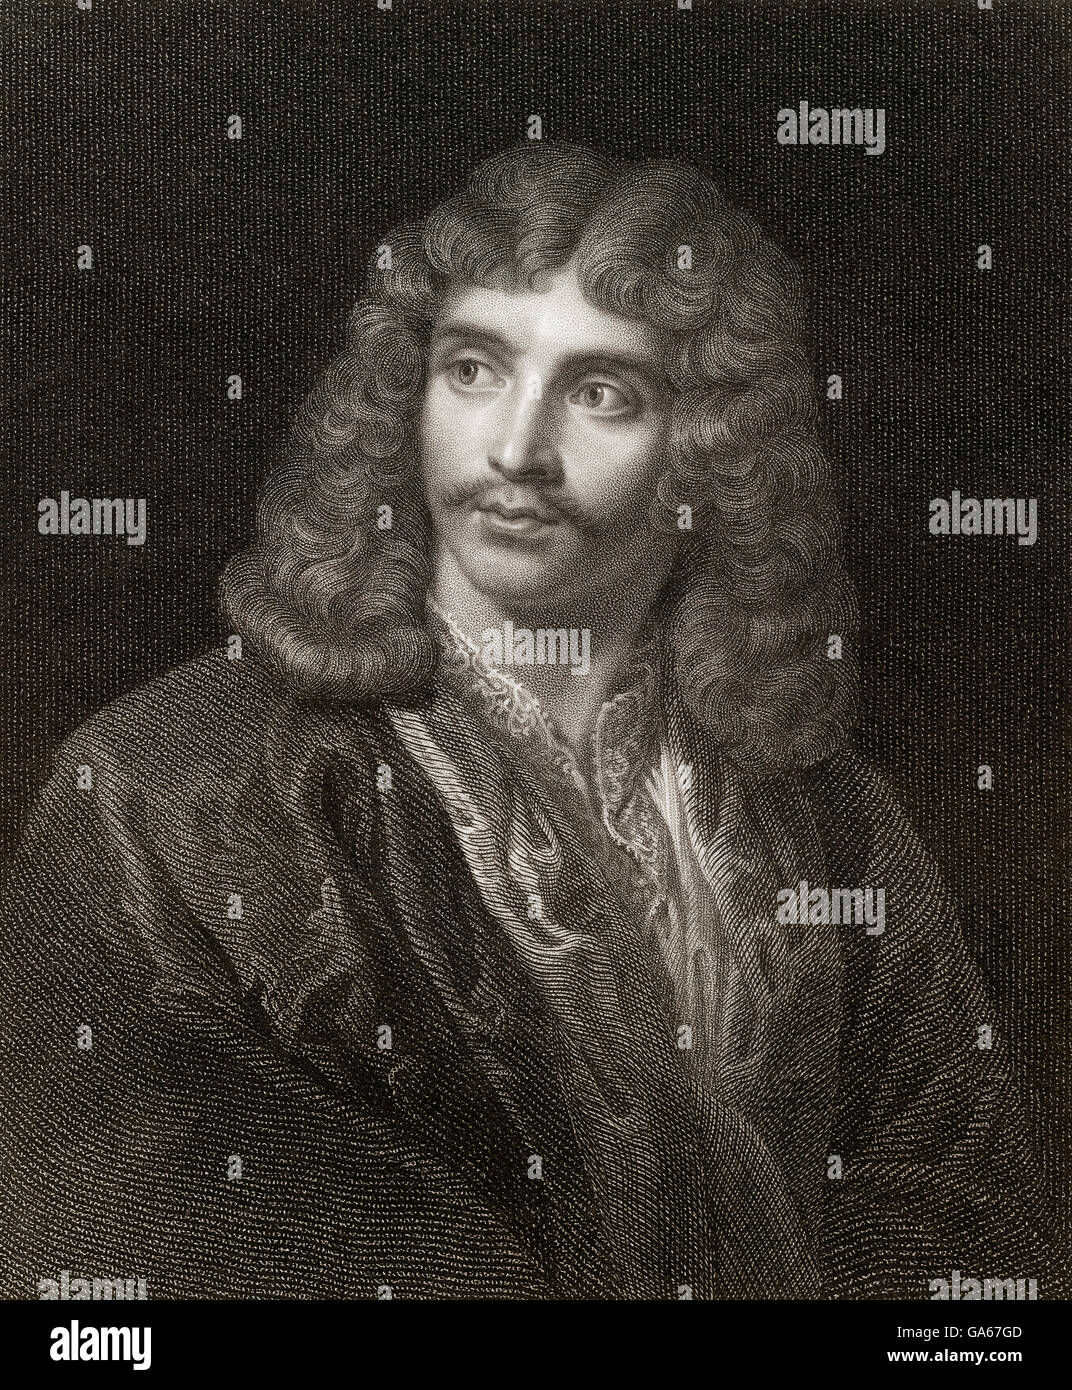 Moliere oder Jean-Baptiste Poquelin, 1622-1673, französischer Schauspieler, Theaterdirektor und Dramatiker Molière Oder Jean-Baptiste Poquel Stockfoto